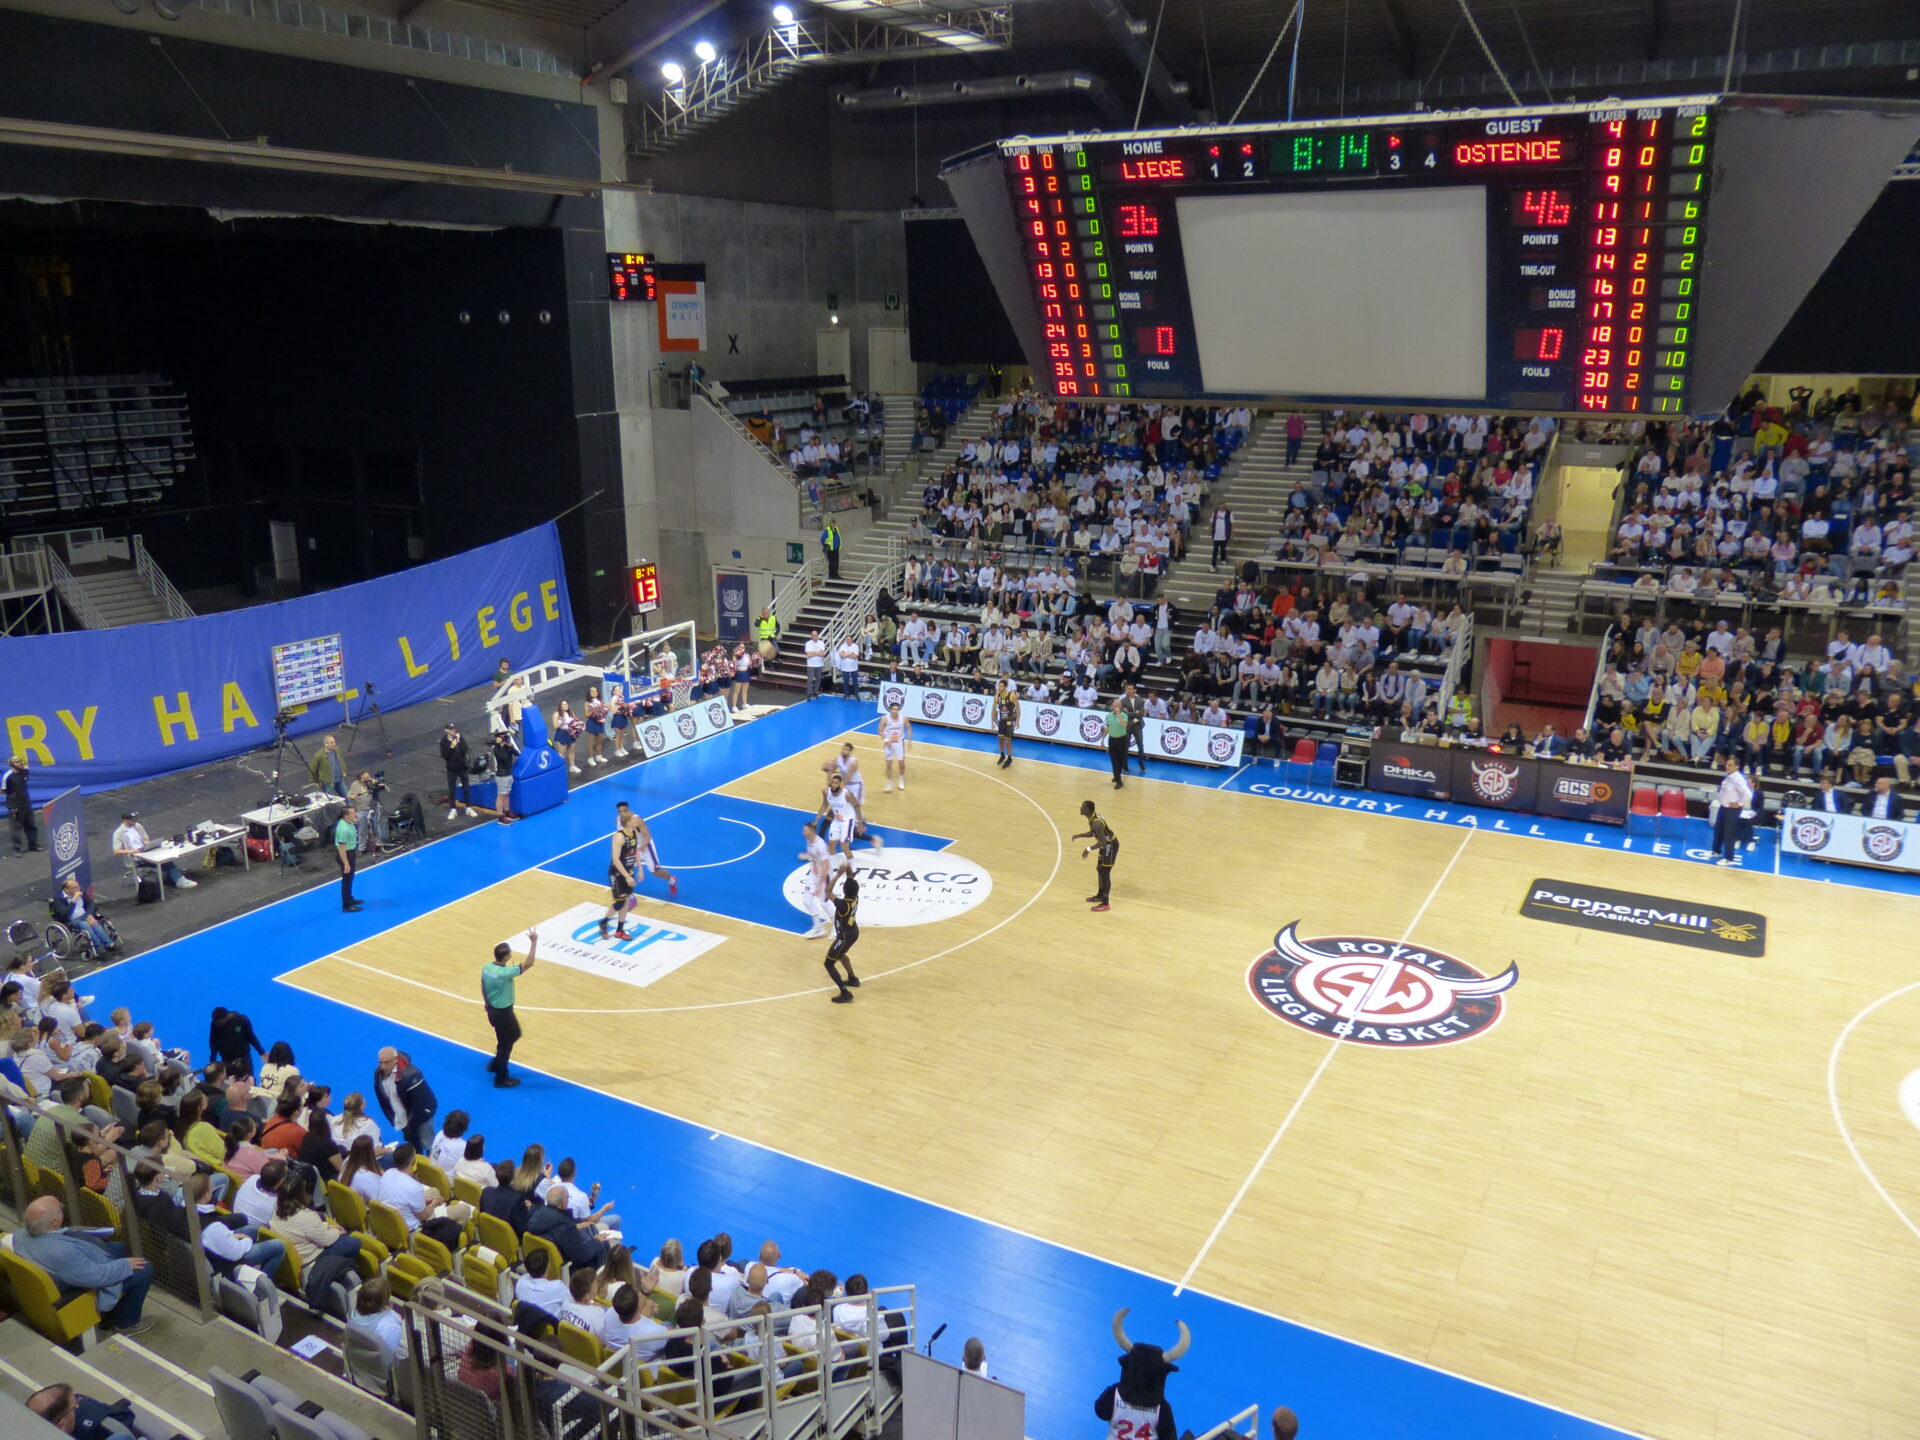 Dos au mur, Liège Basket crée la surprise à Ostende en demi-finale des play-offs (résumé vidéo)